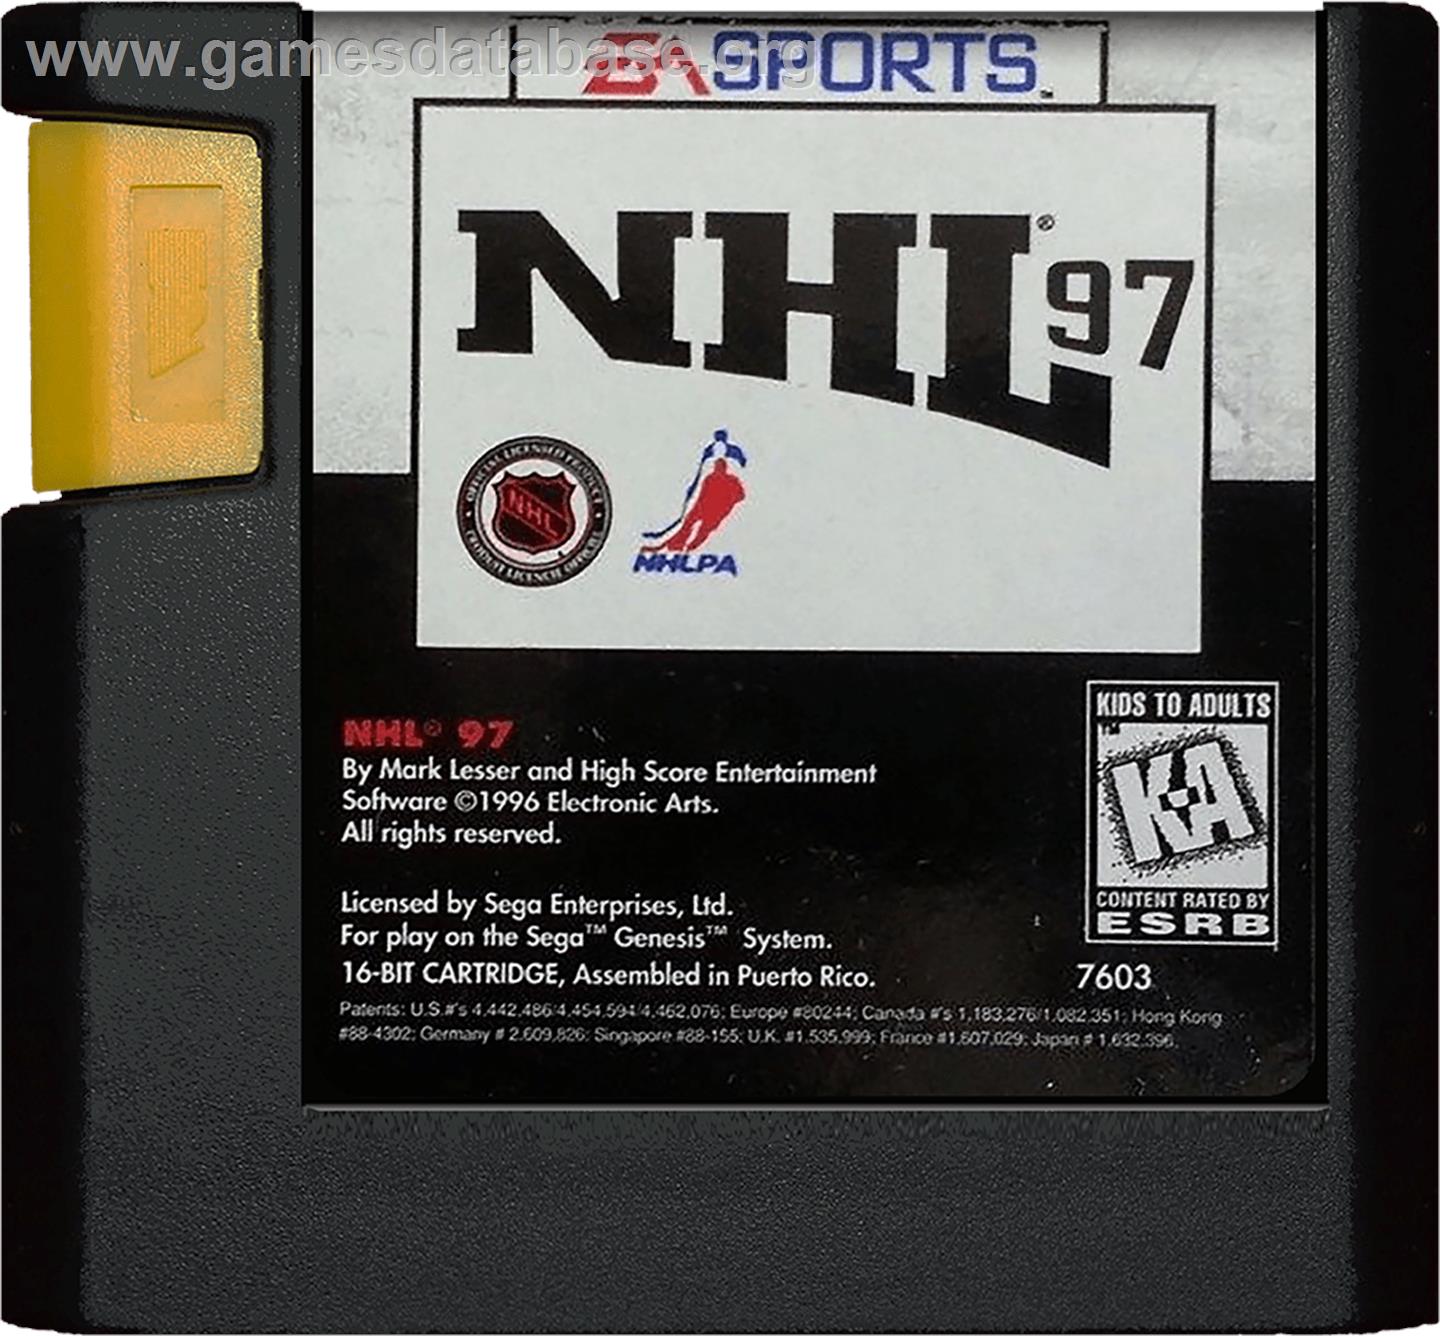 NHL '97 - Sega Genesis - Artwork - Cartridge